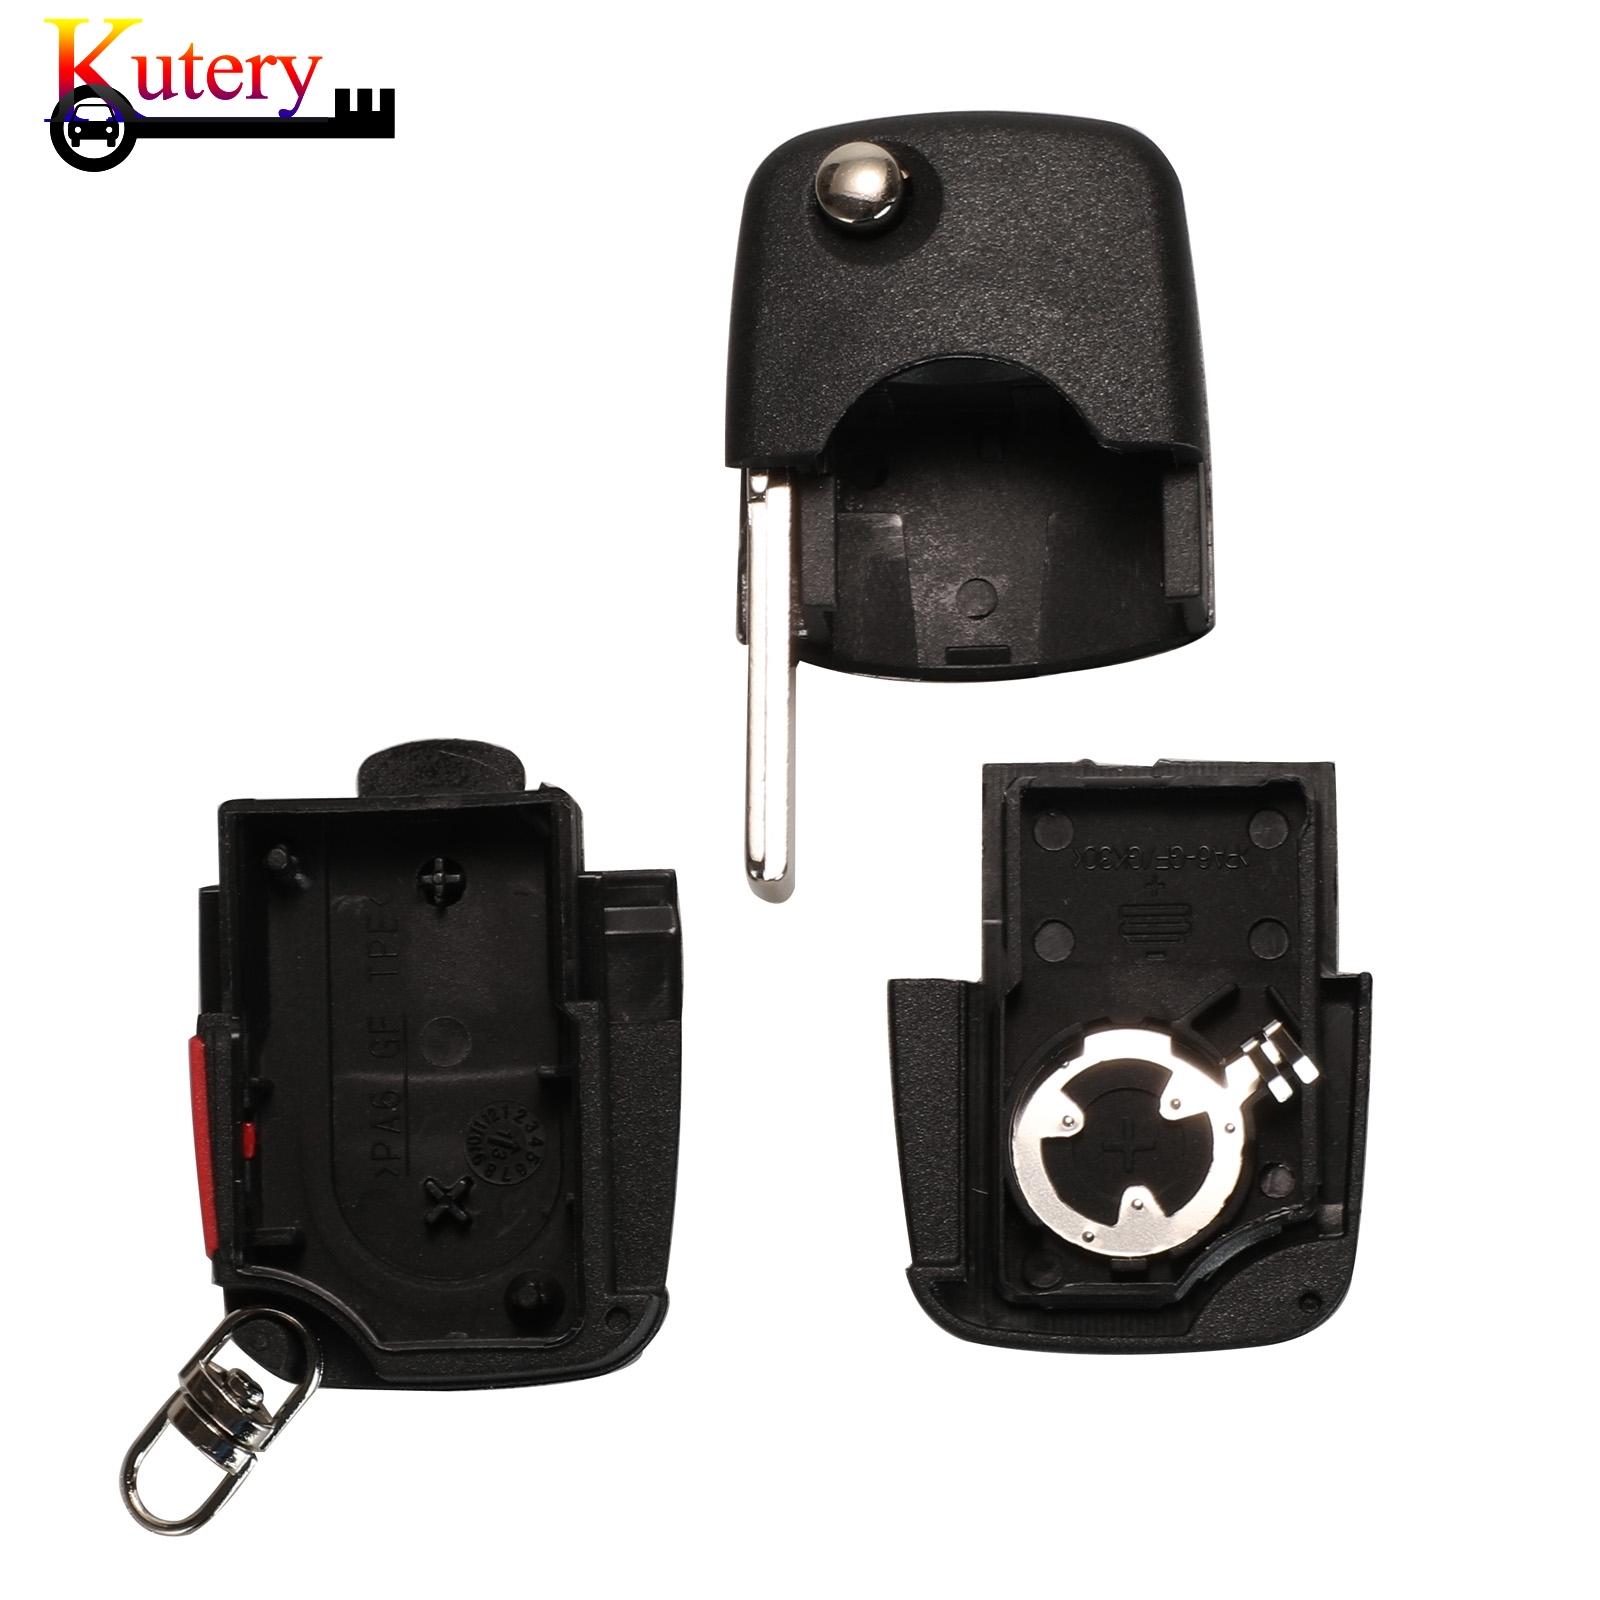 Изображение товара: Kutery 10 шт./лот складной дистанционный ключ для автомобиля в виде ракушки для Volkswagen VW Passat Jetta Golf Beetle 2/3 + паника 3/4 кнопки ключ чехол